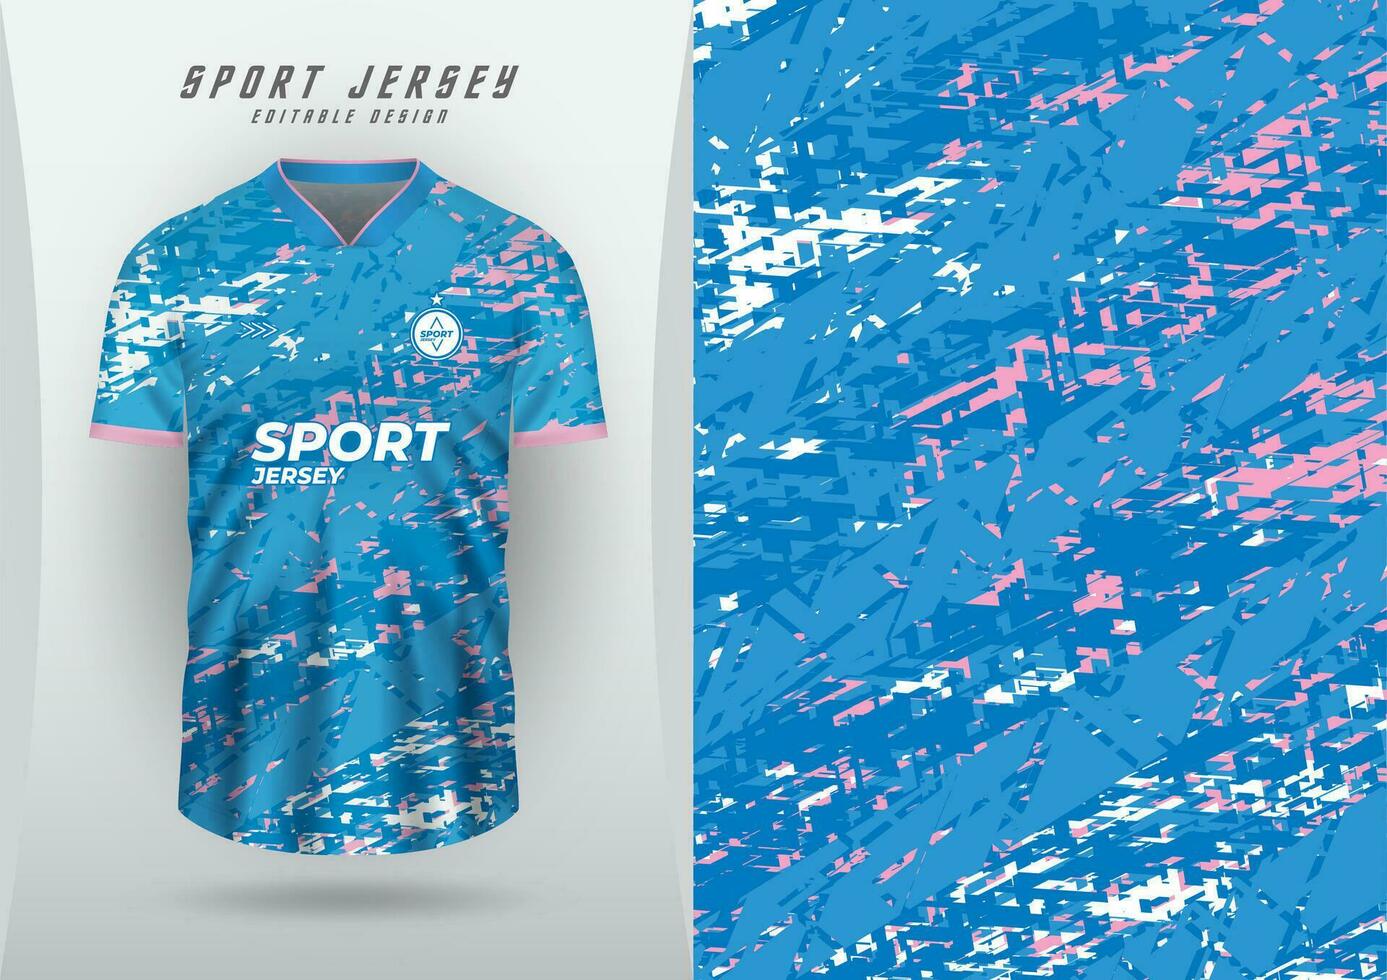 Hintergrund zum Sport Jersey, Fußball Jersey, Laufen Jersey, Rennen Jersey, Grunge Muster, Blau, Rosa und Weiß. vektor